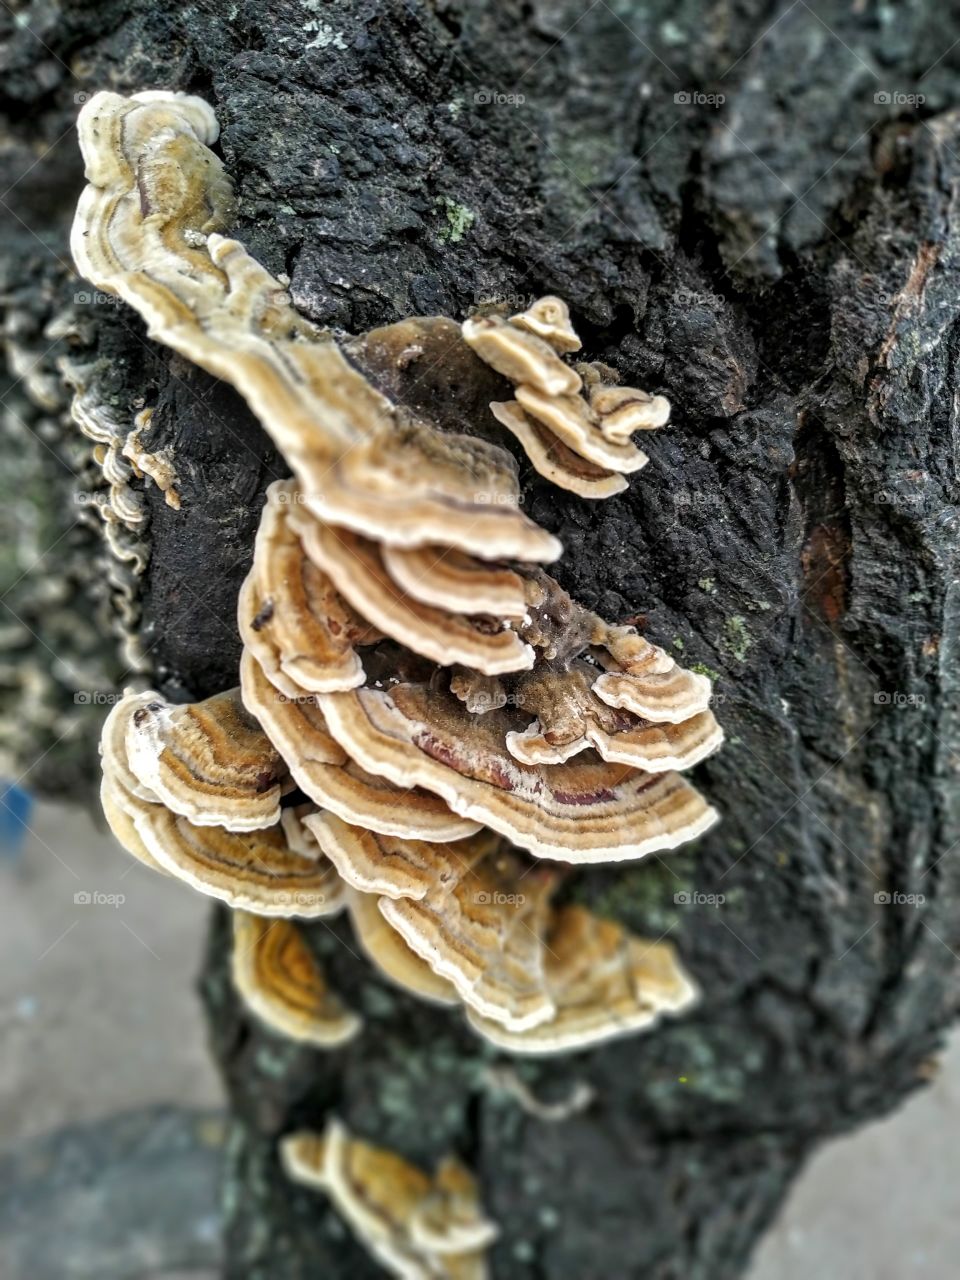 mushrooms and tree